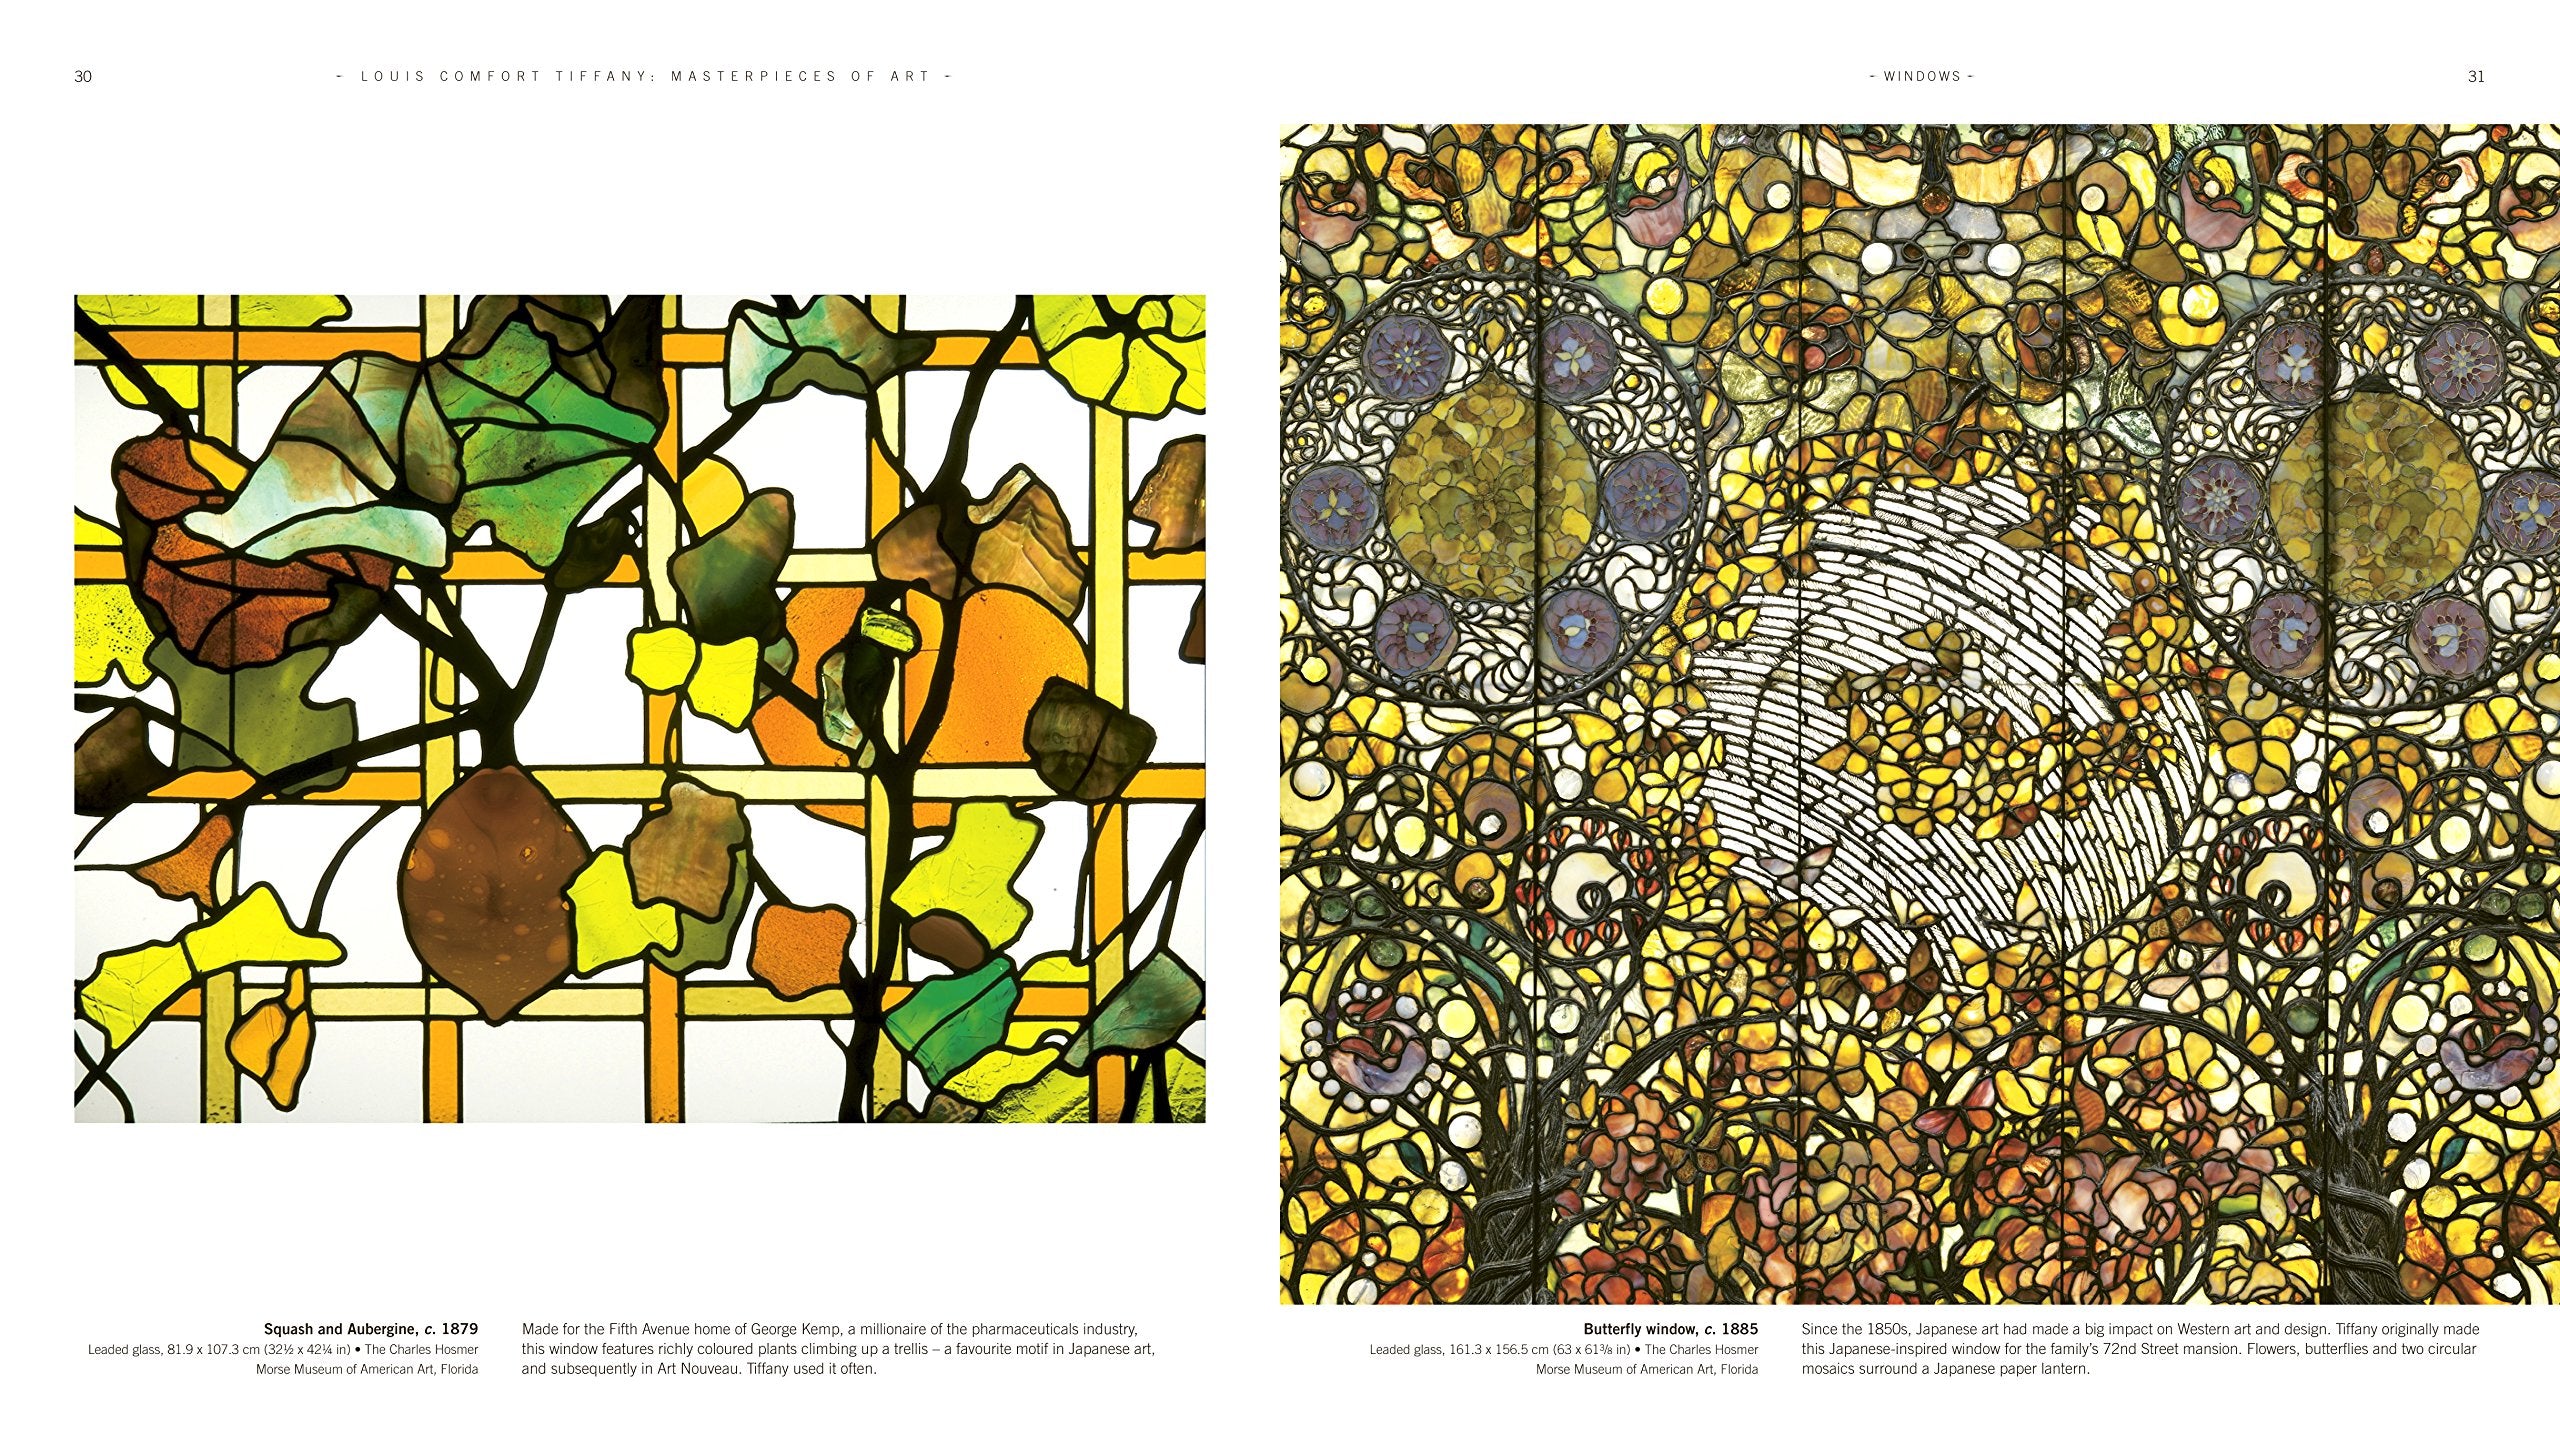 Art Nouveau/Louis Comfort Tiffany Worksheet Bundle